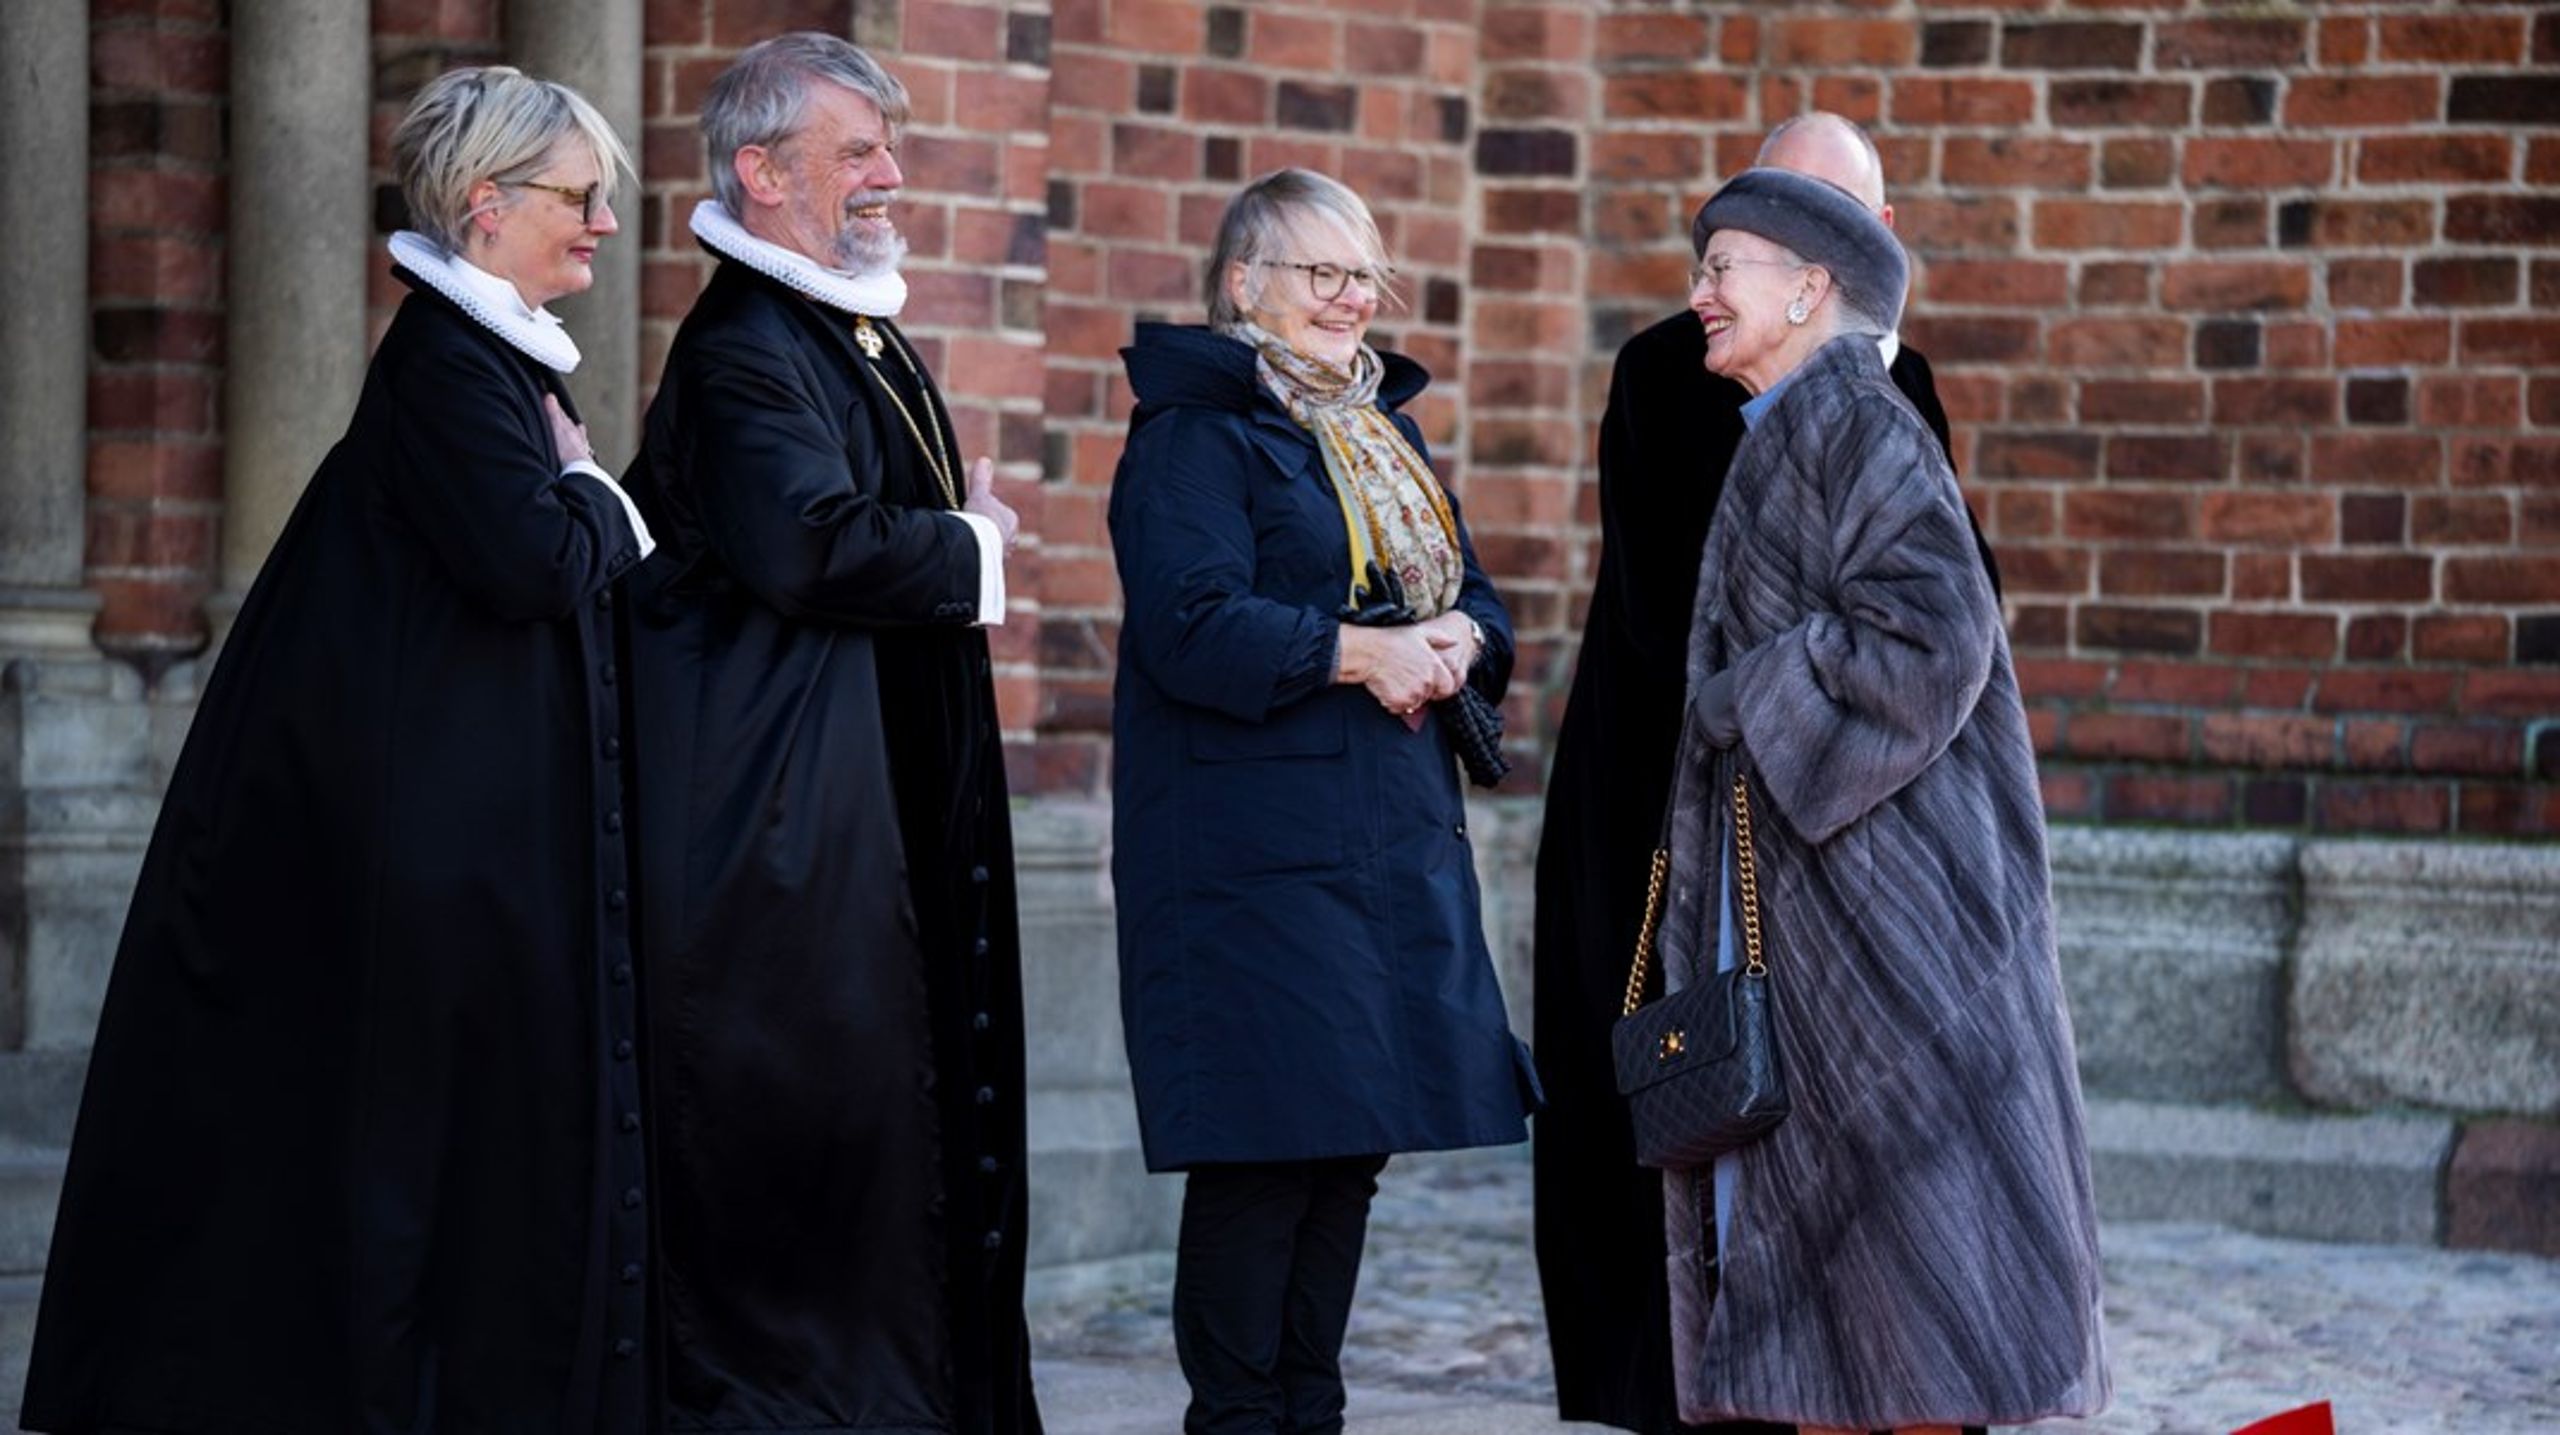 Domprovst for Roskilde Domprovsti,&nbsp;Anne-Sophie Olander Christiansen, har fået tildelt&nbsp;ridderkorset af Dannebrogordenen af Kongehuset.